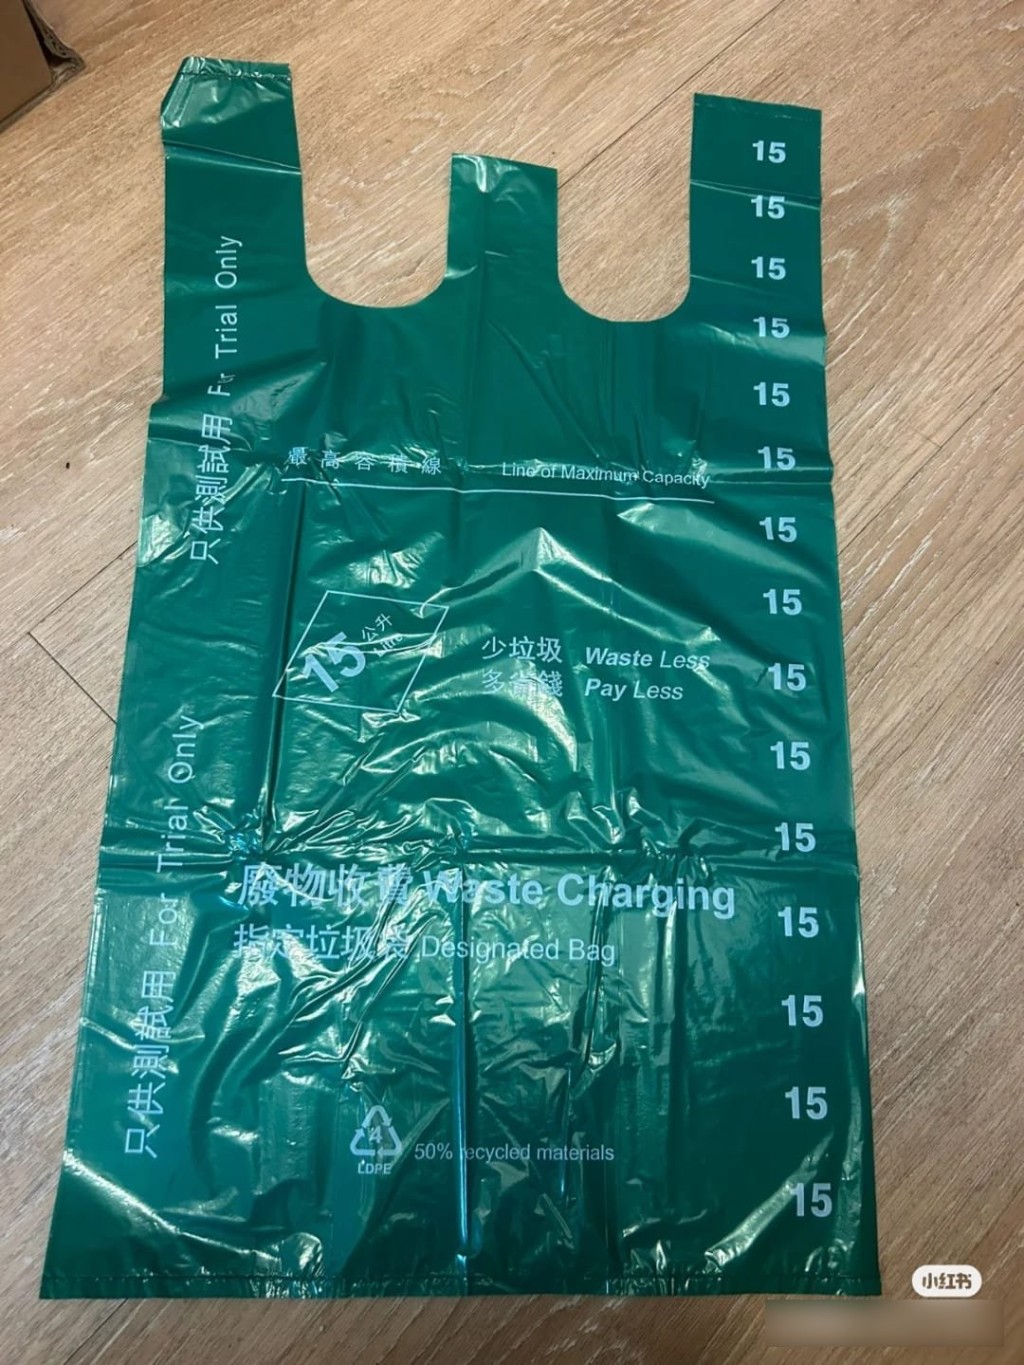 流出的膠袋圖主要是15公升的背心袋，並有只供測試用的字眼。小紅書圖片